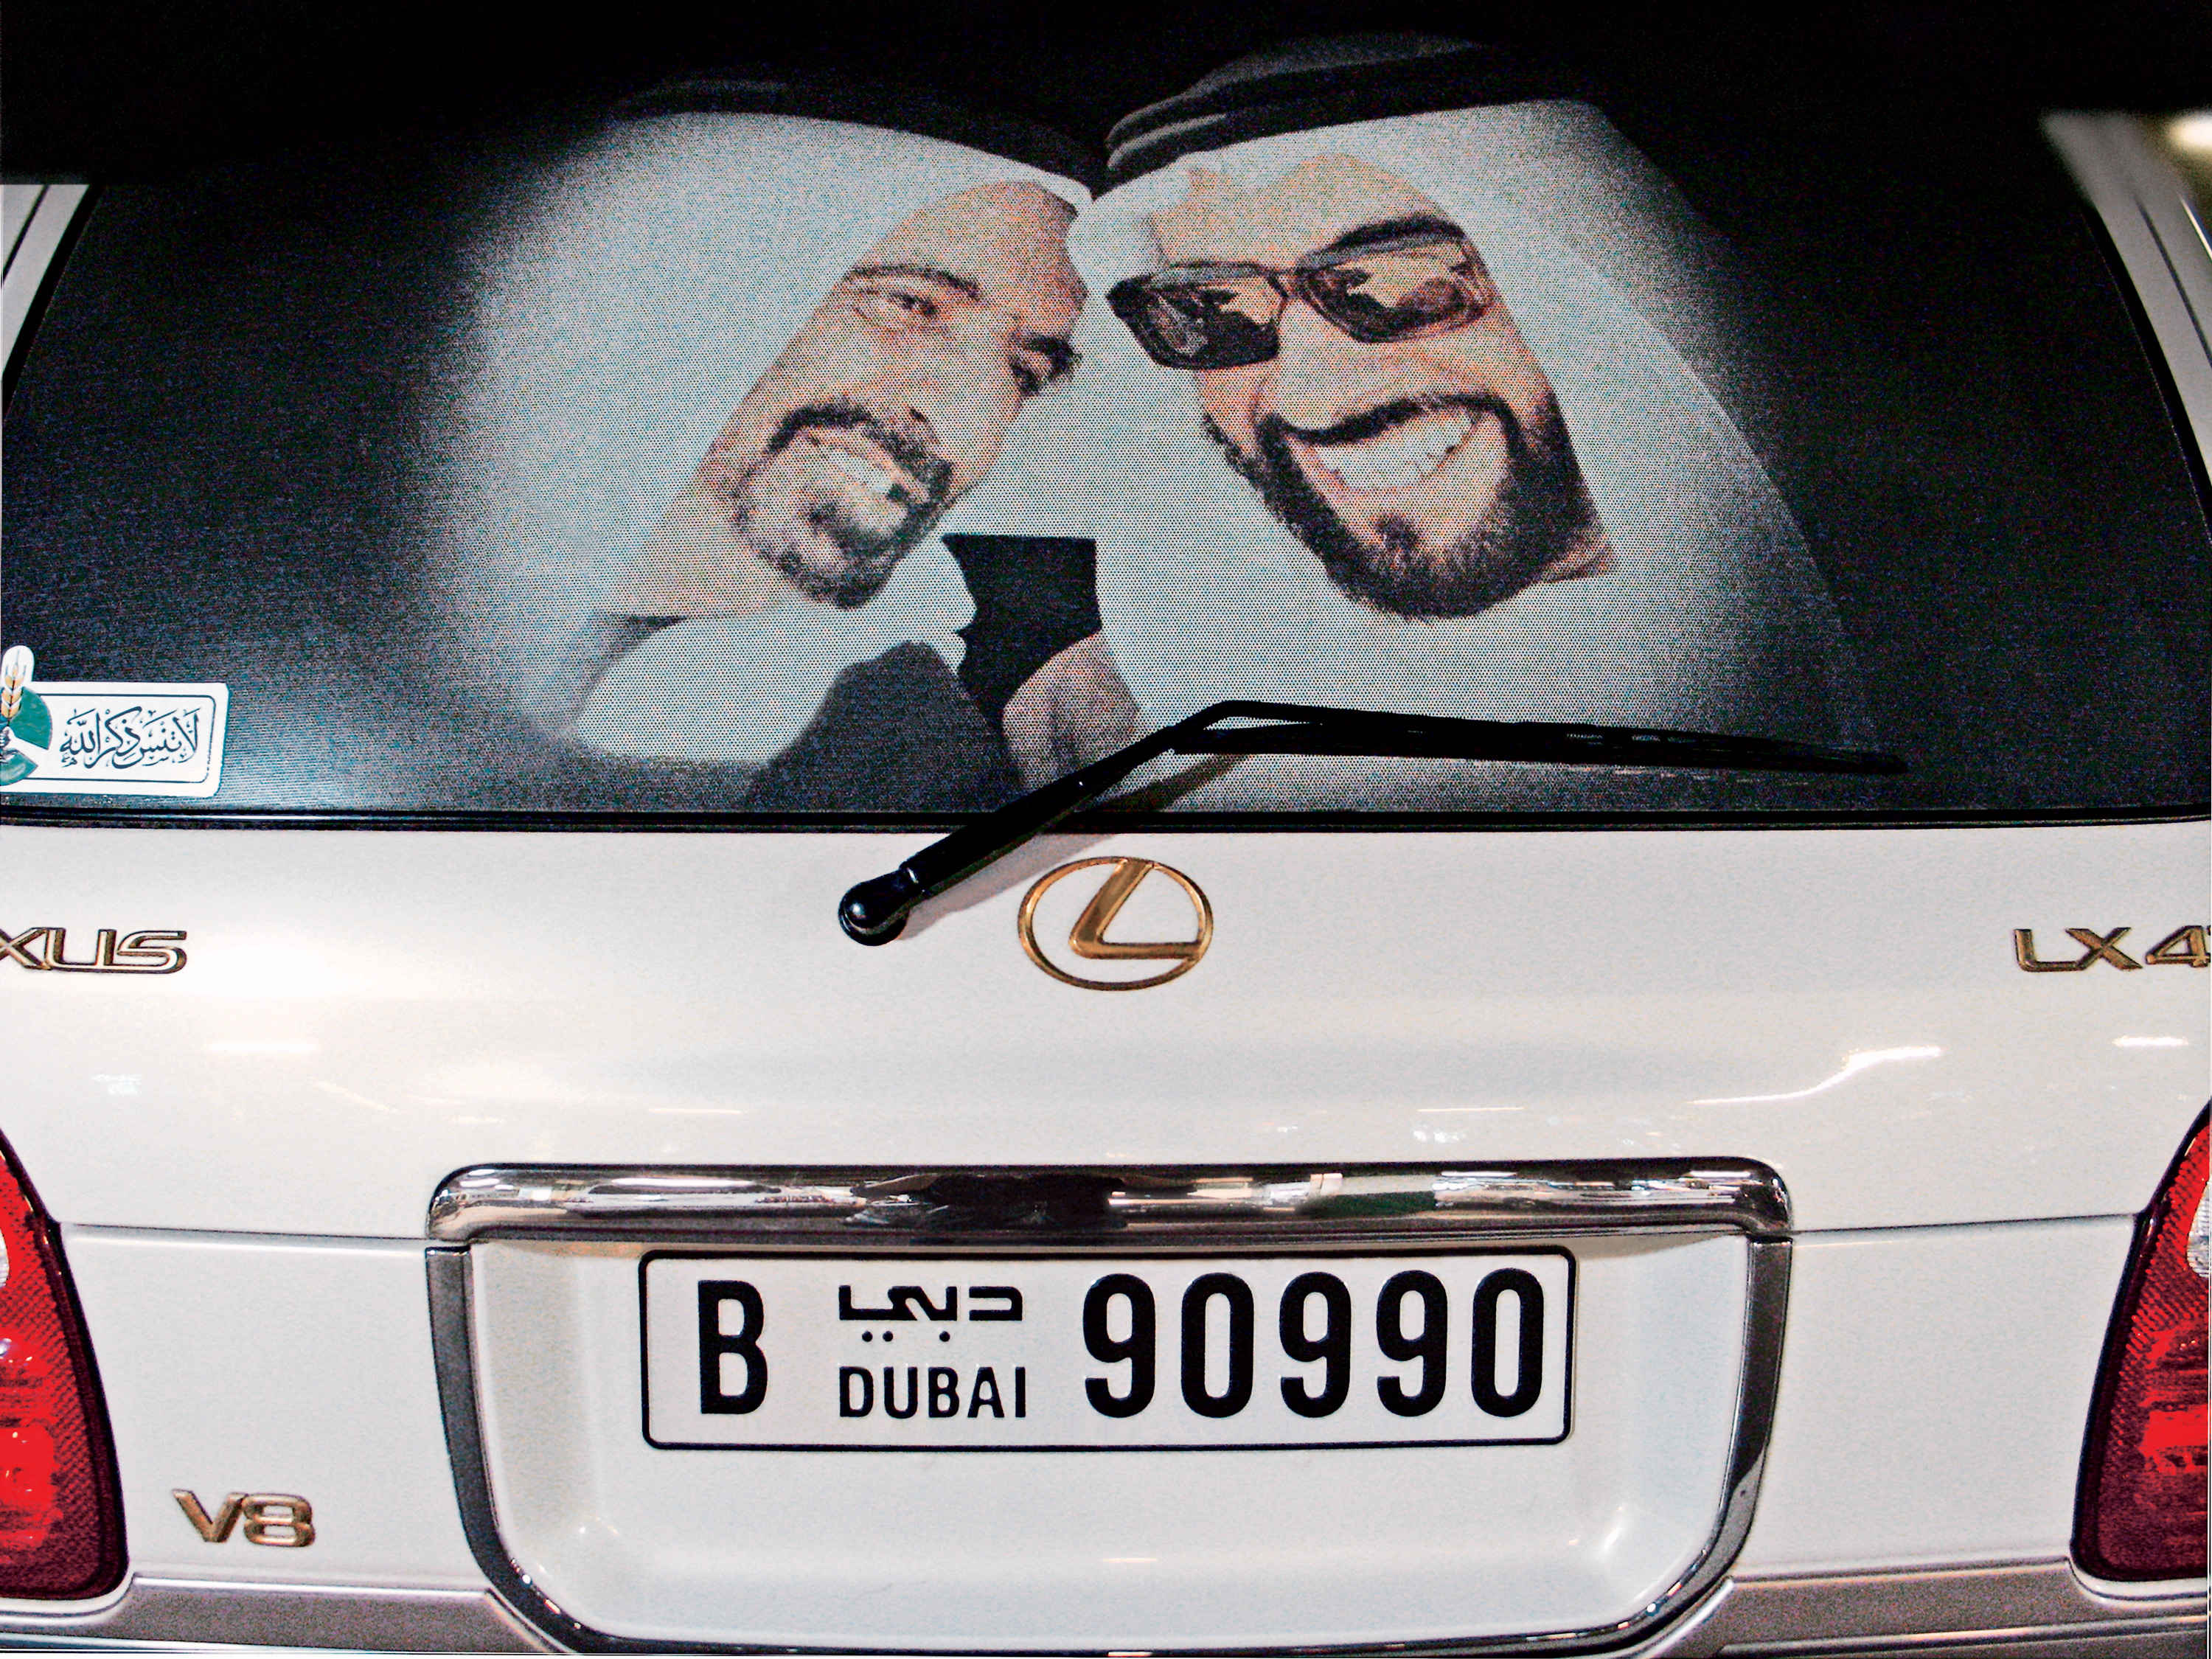 Самые дорогие номера на машину в мире. Арабские автомобильные номера. Номера машин в Дубае. Номера машин арабских Эмиратов. Арабские номера на машину.